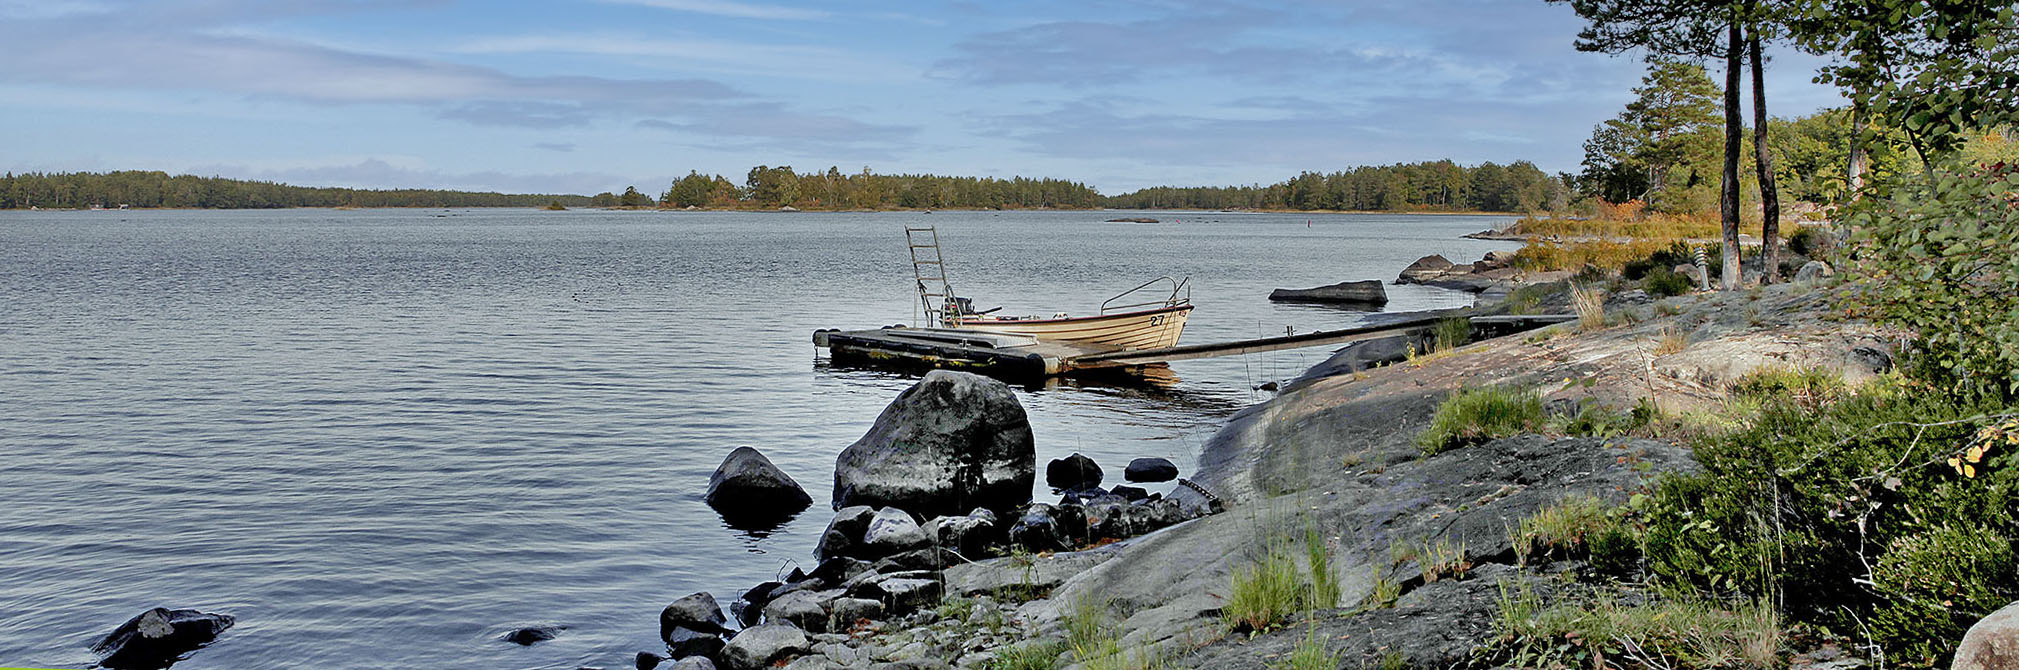 Välkommen till Rosö camping och fiske - en alldeles egen paradisö med egen brygga, båt grillplats och fiske inkluderat!